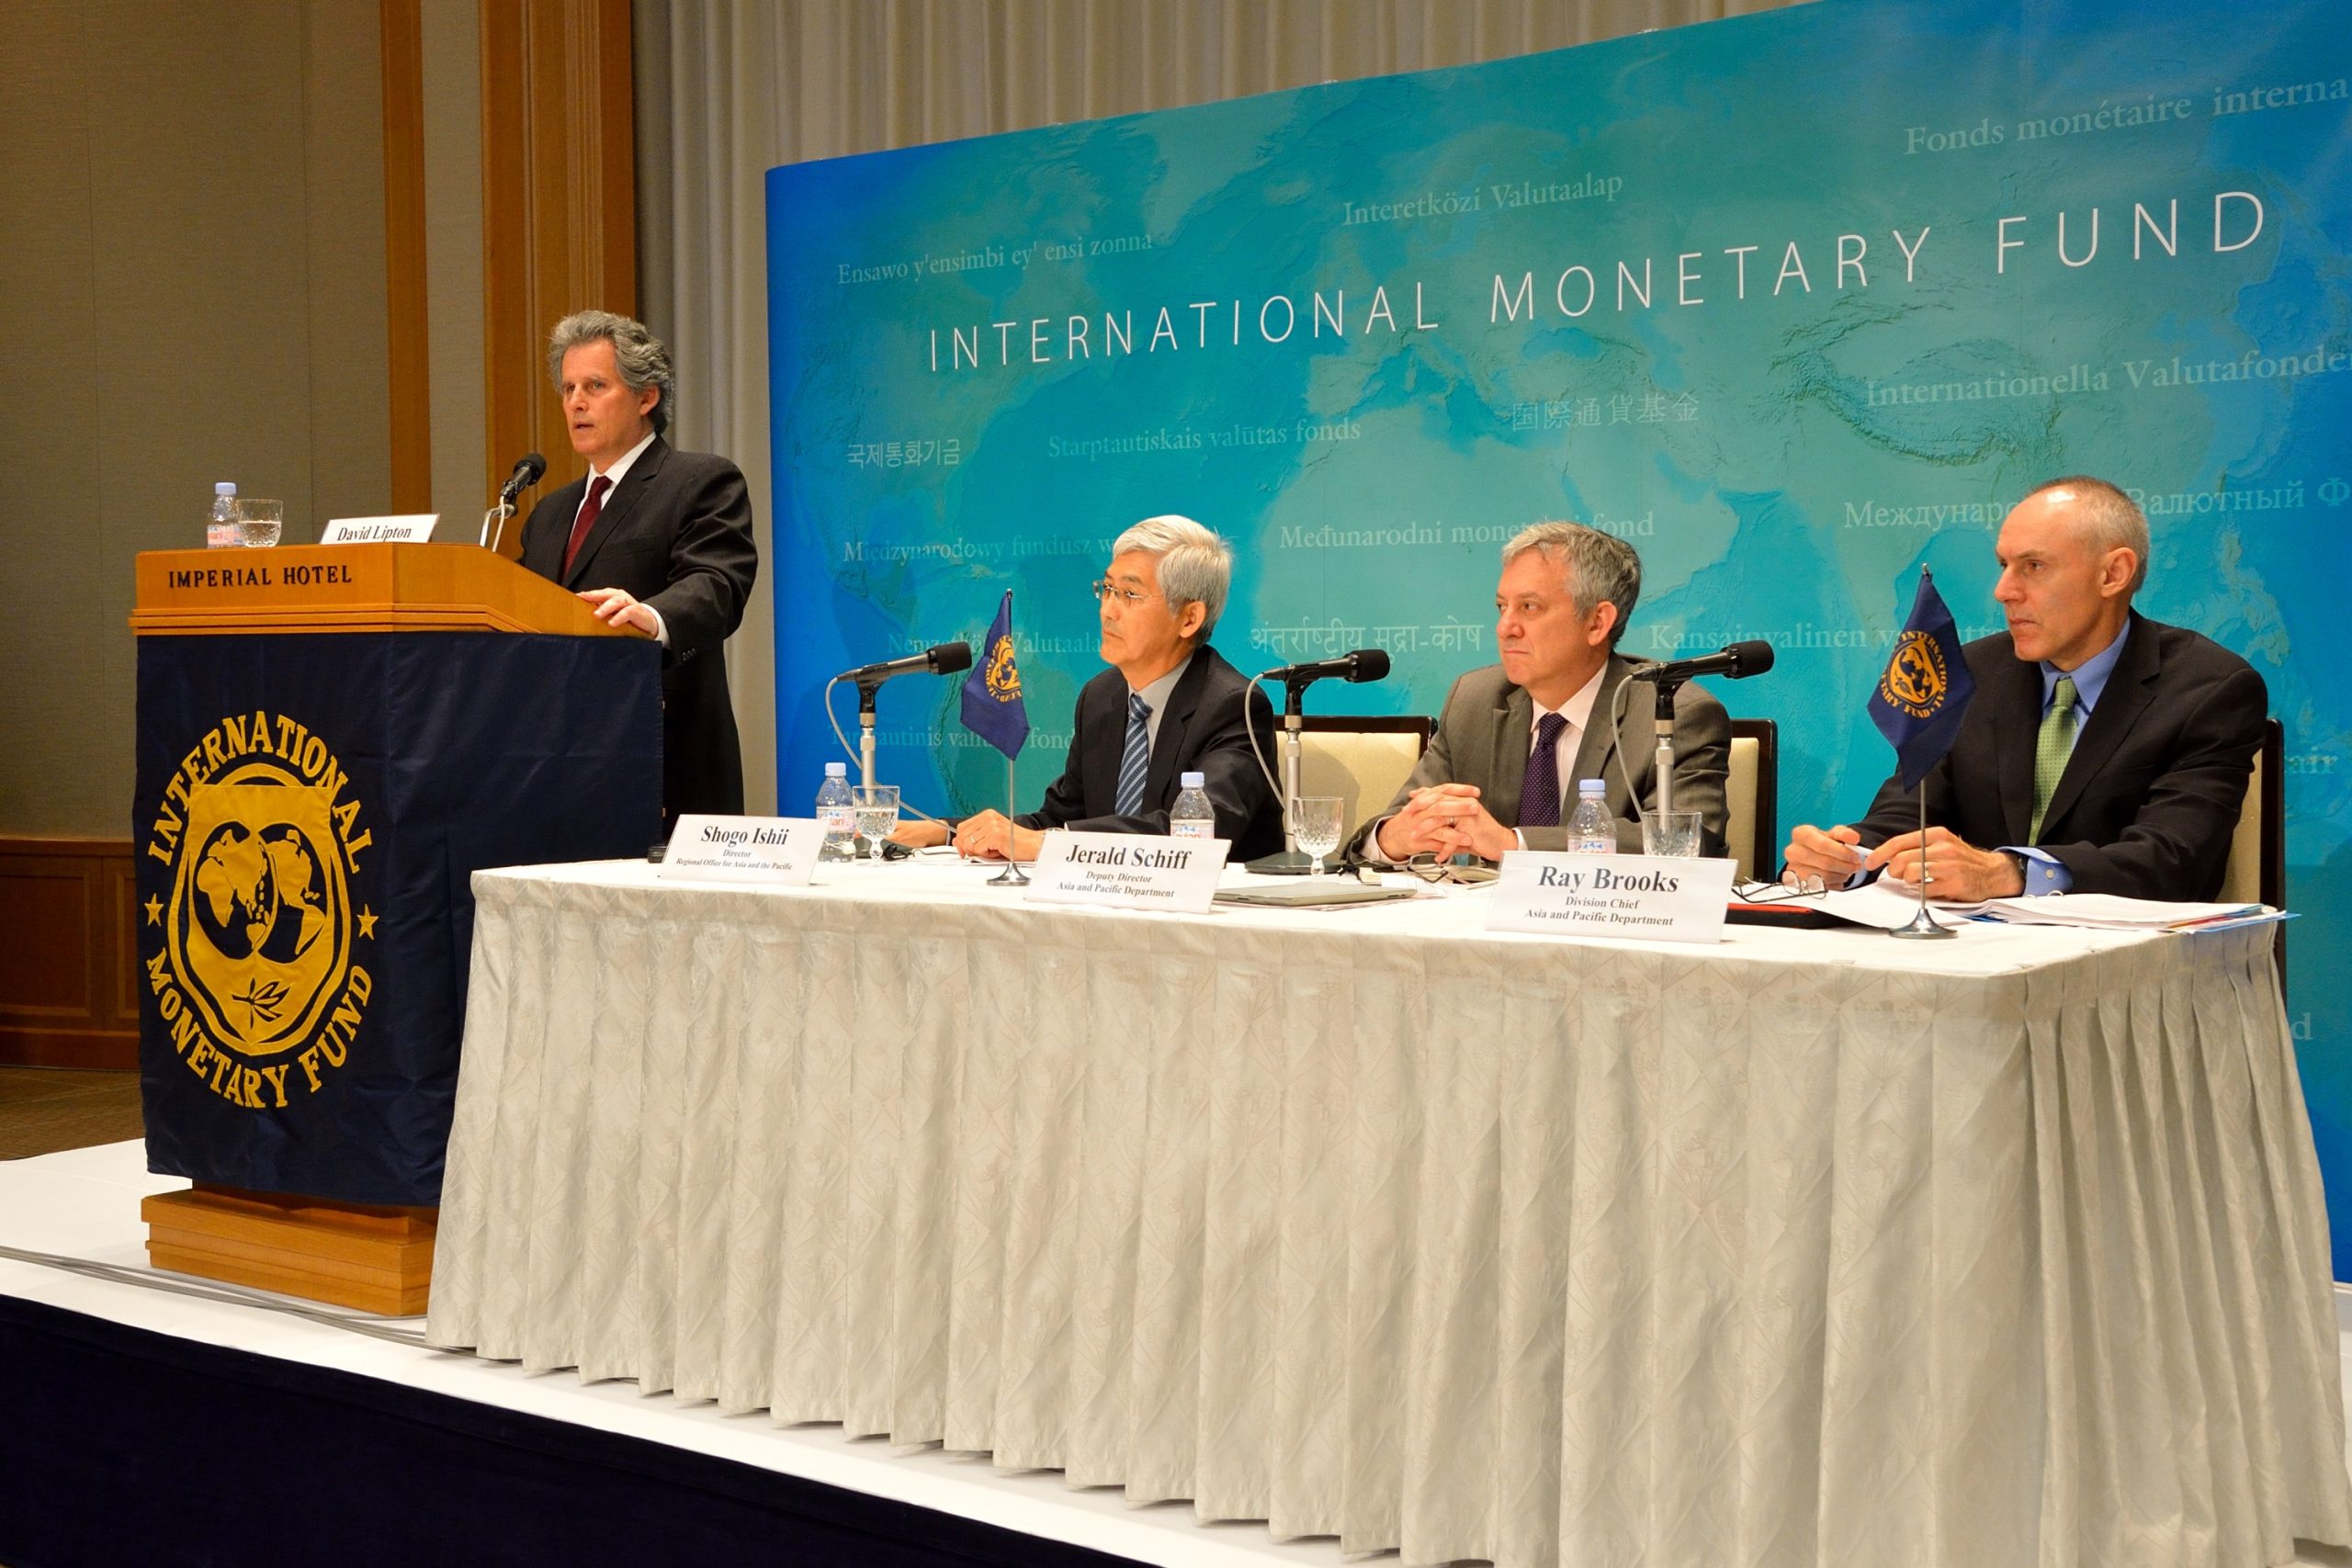 Der Internationale Währungsfonds – einer der größten Gläubiger weltweit (© IMF)